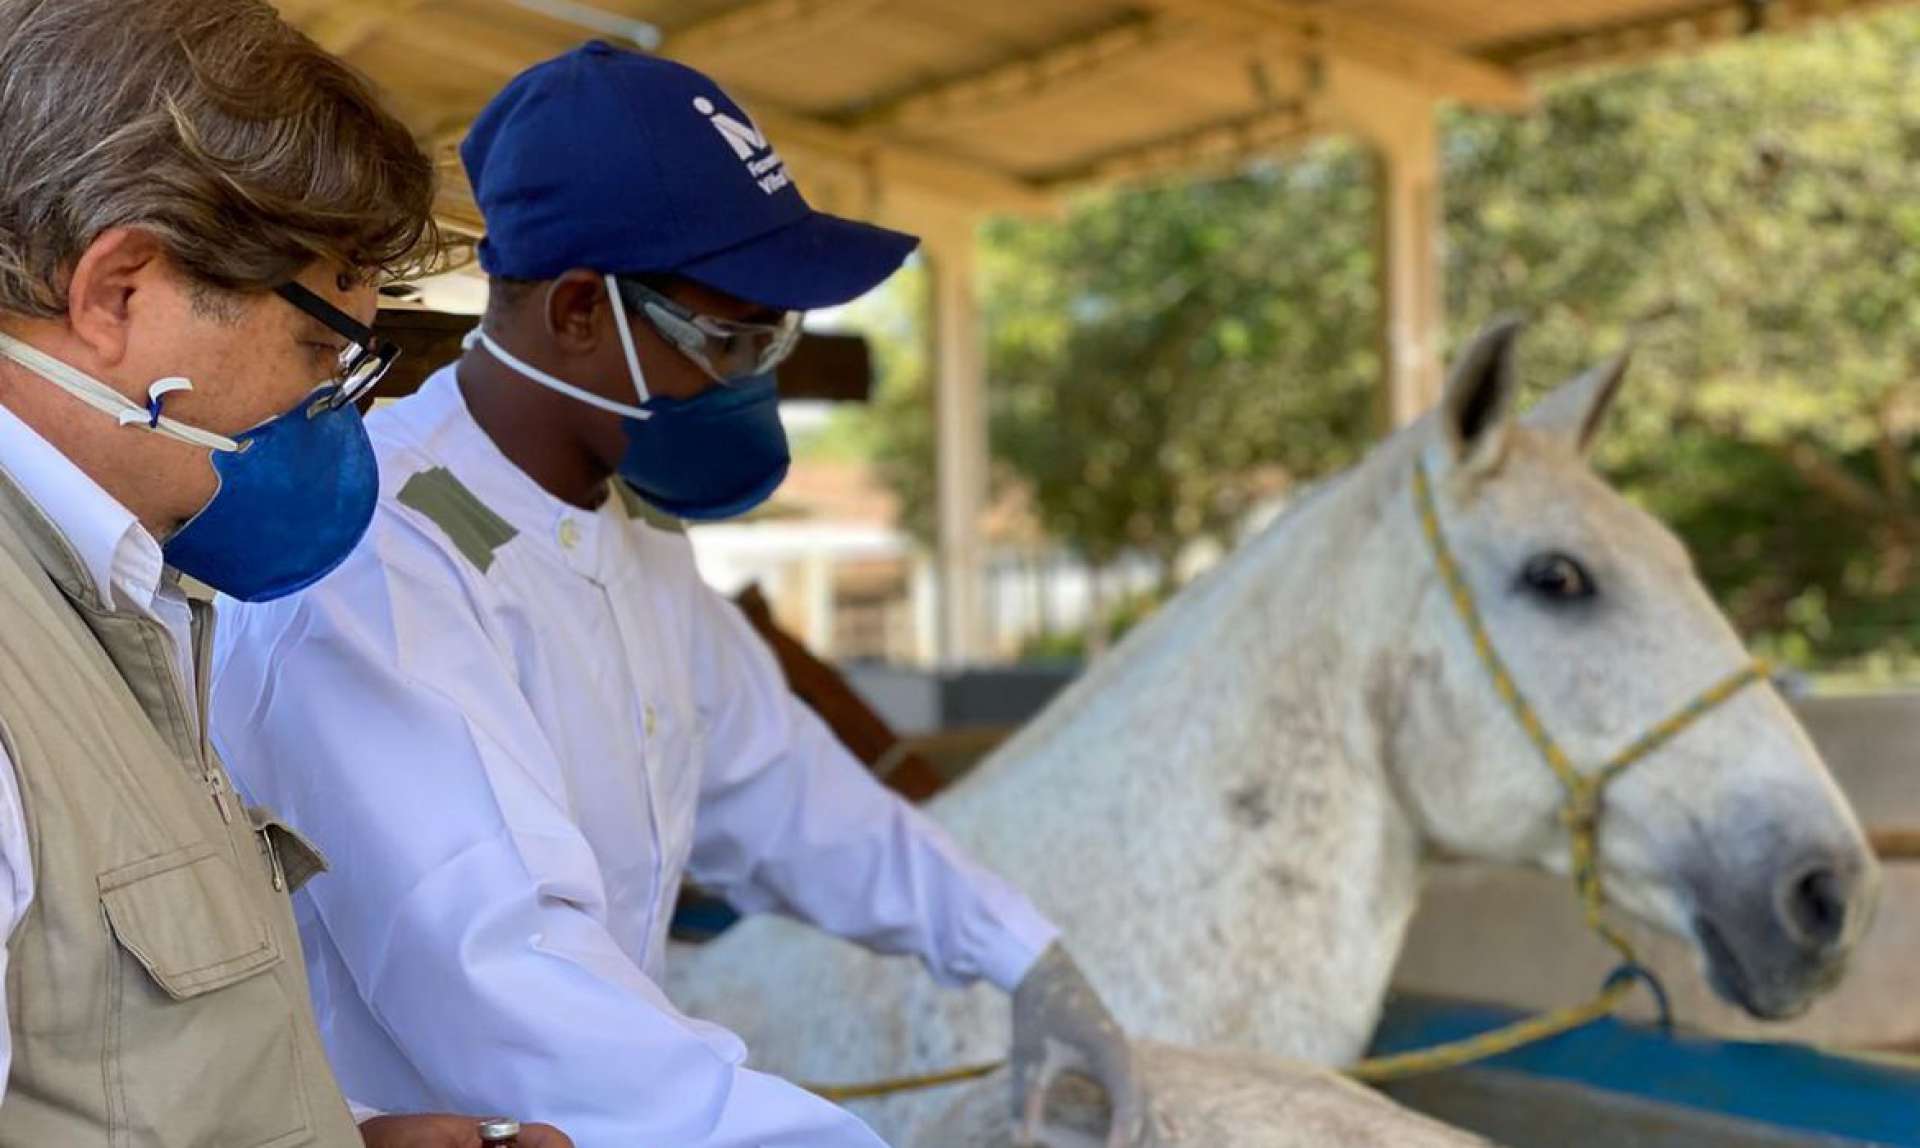 Soro produzido por cavalos: testes em humanos aguarda autorização da Anvisa
 (Foto: divulgação)